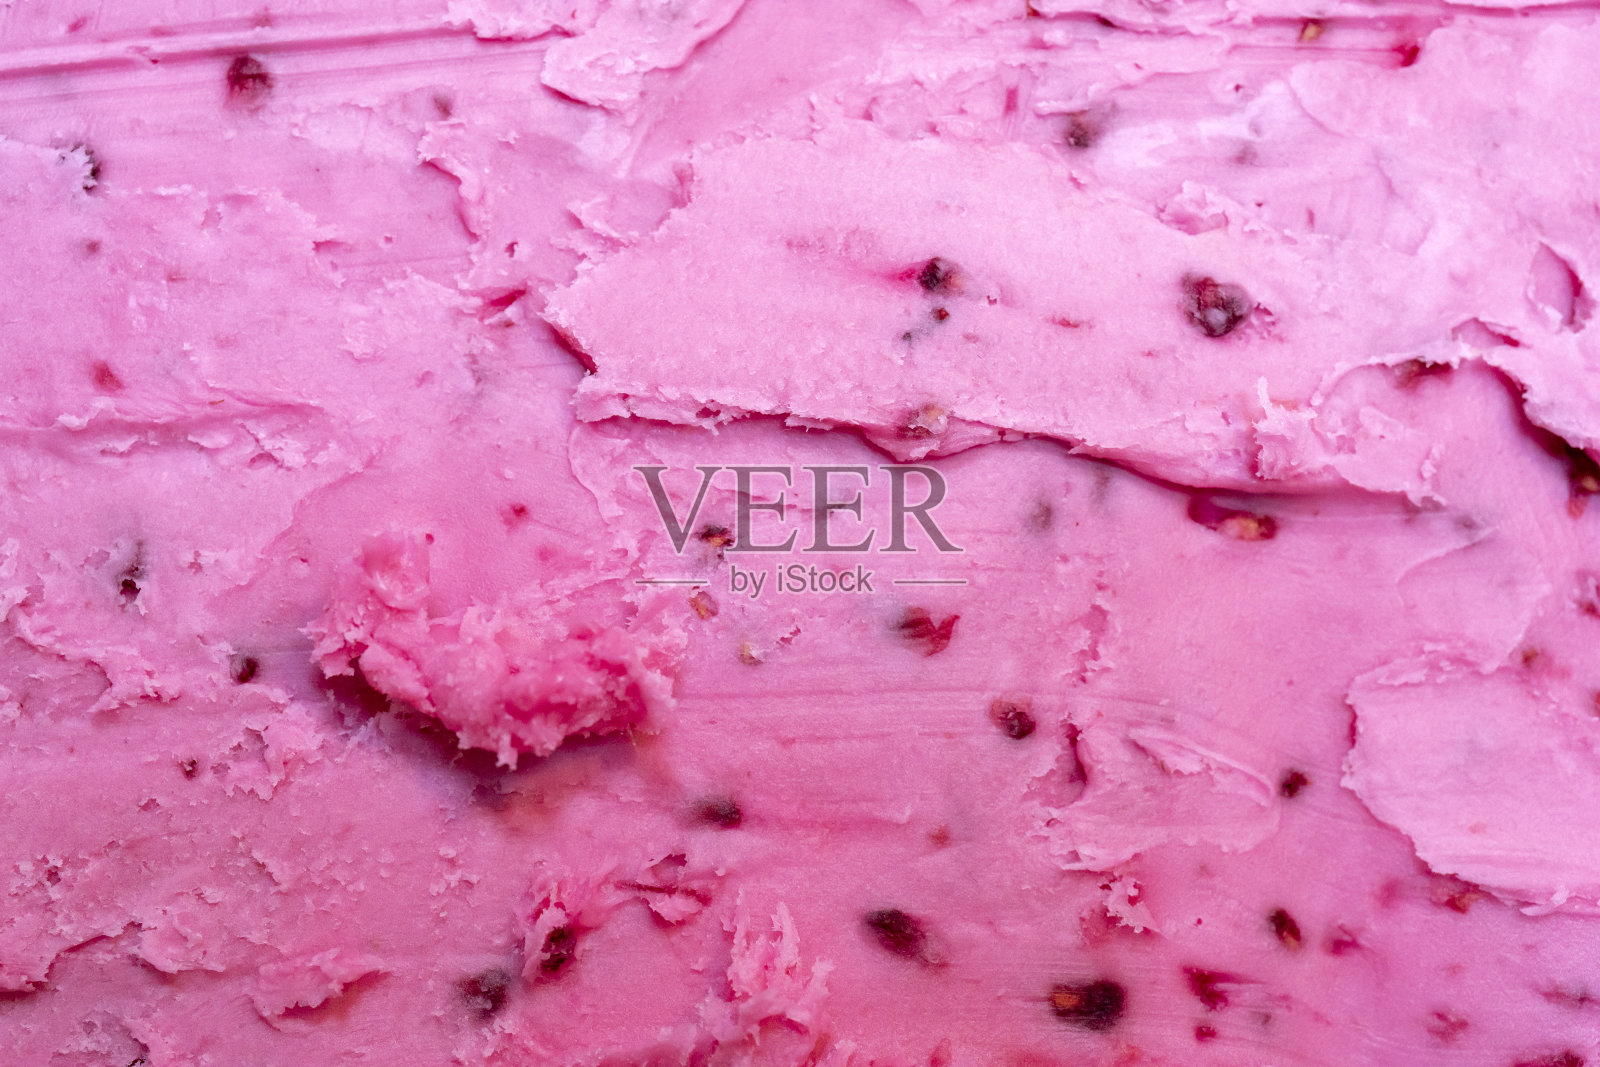 浆果冰淇淋的粉红色质地。照片摄影图片